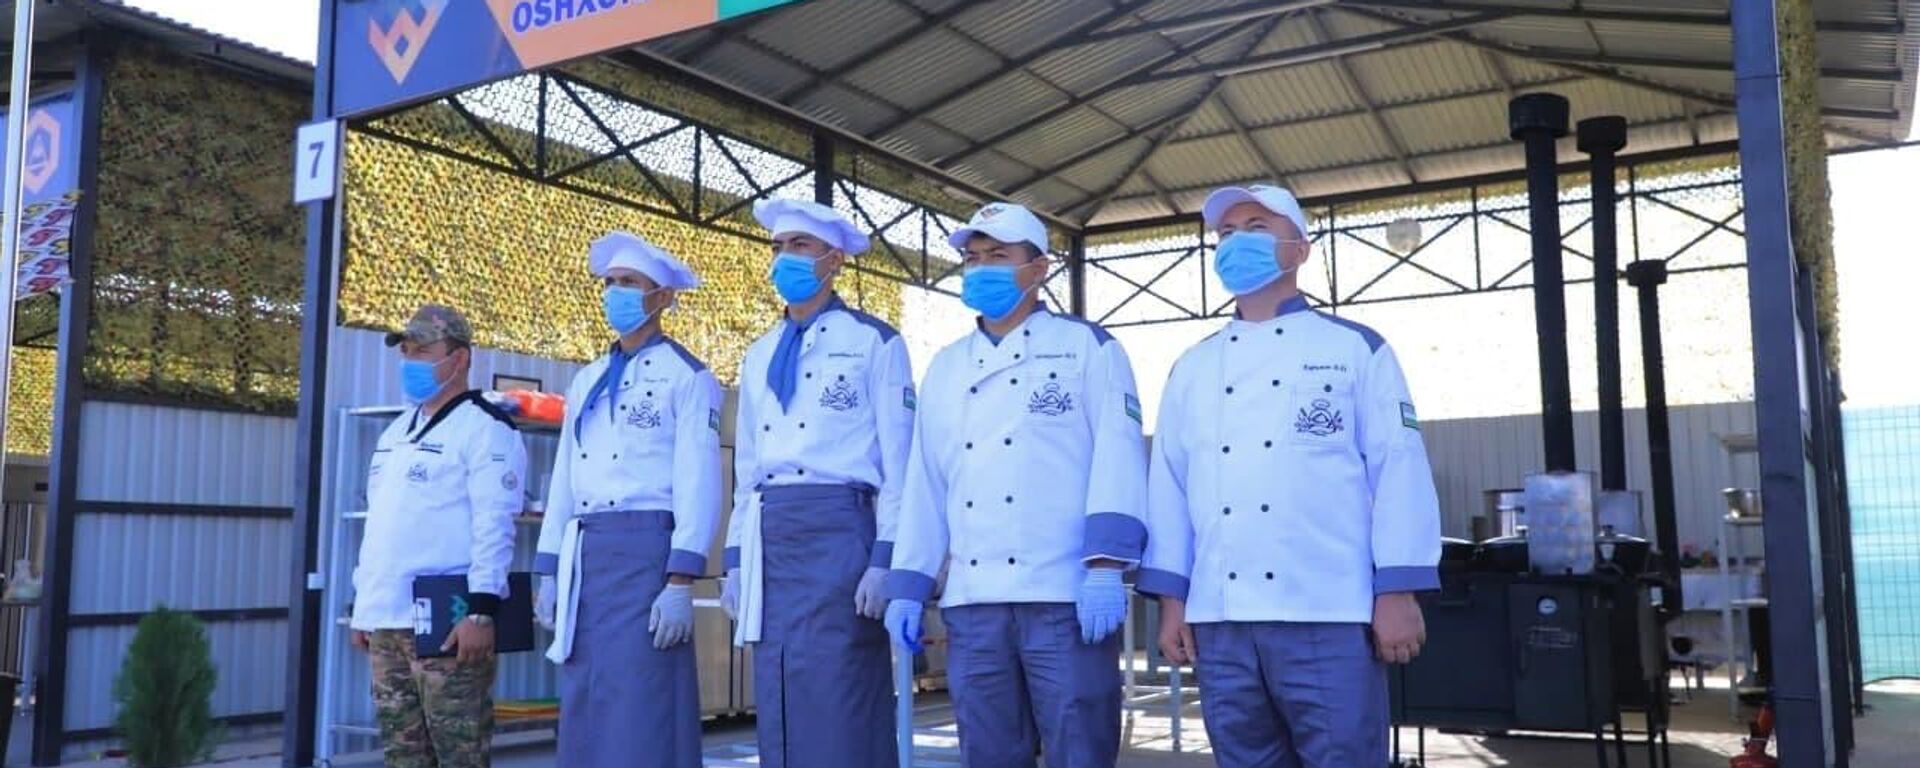 Узбекские военные успешно прошли первый этап конкурса Полевая кухня - АрМИ-2021 - Sputnik Ўзбекистон, 1920, 26.08.2021